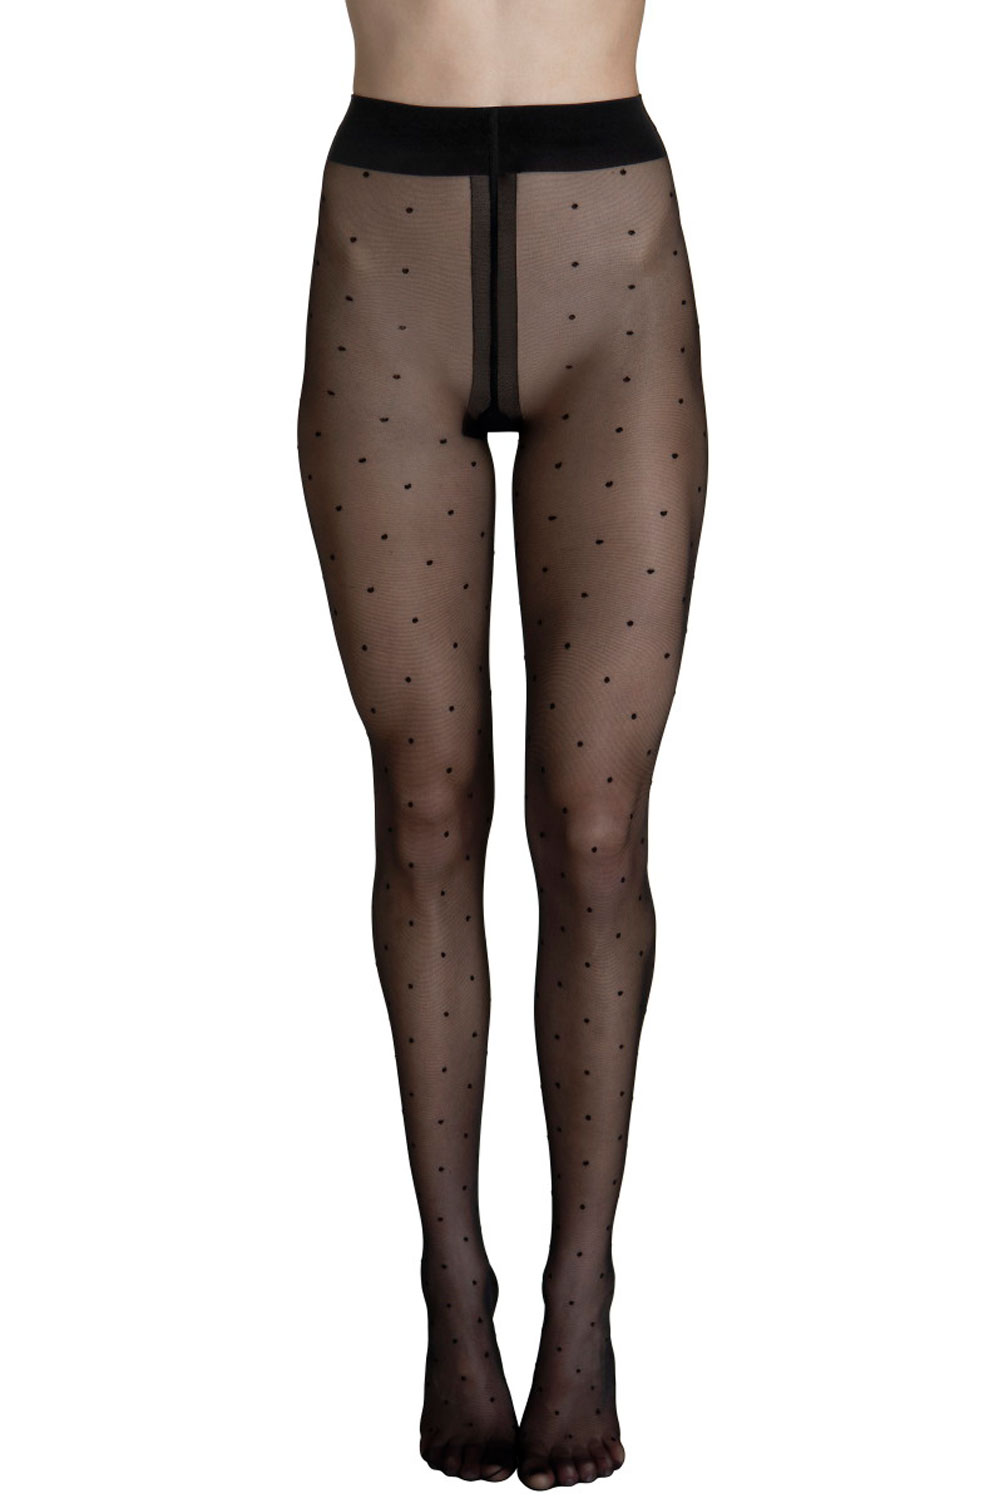 Lisca Fashion Dot 20 Strumpfhose mit Tupfen Socks and tights 36 schwarz günstig online kaufen